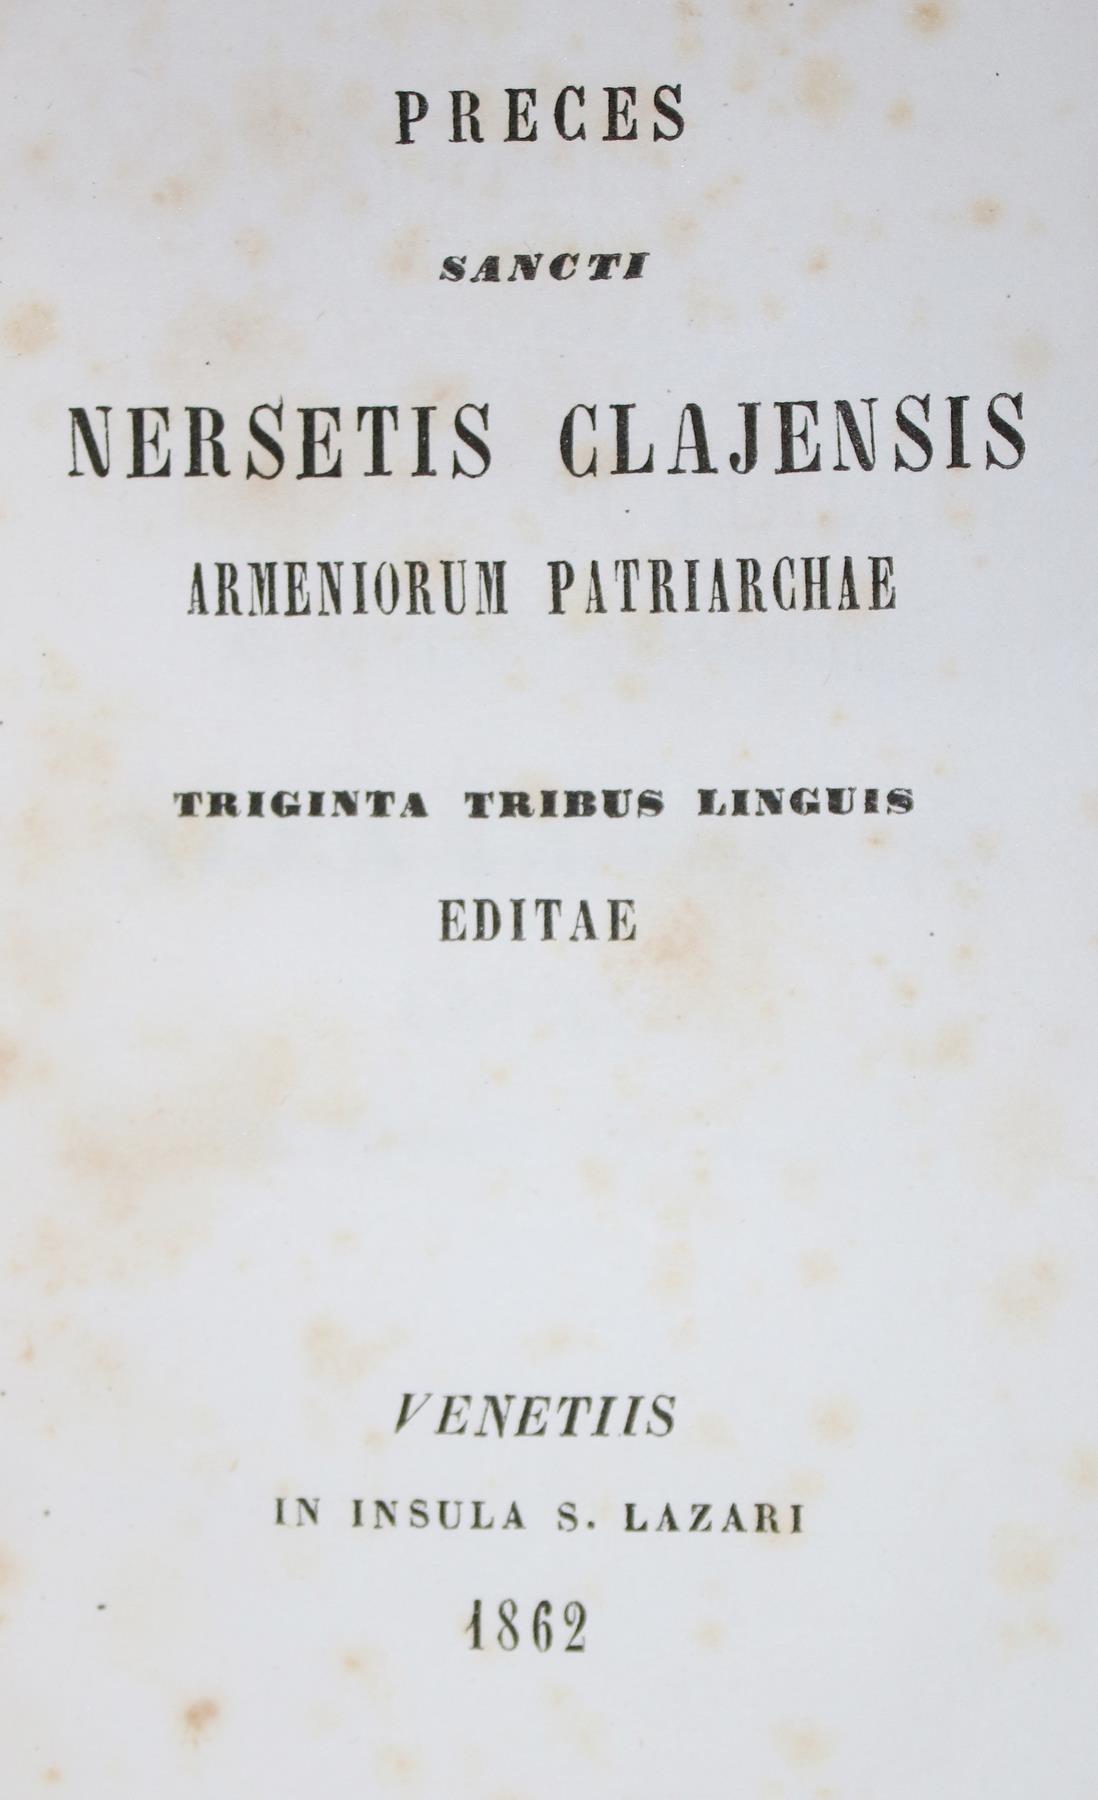 Nerses Clajensis.